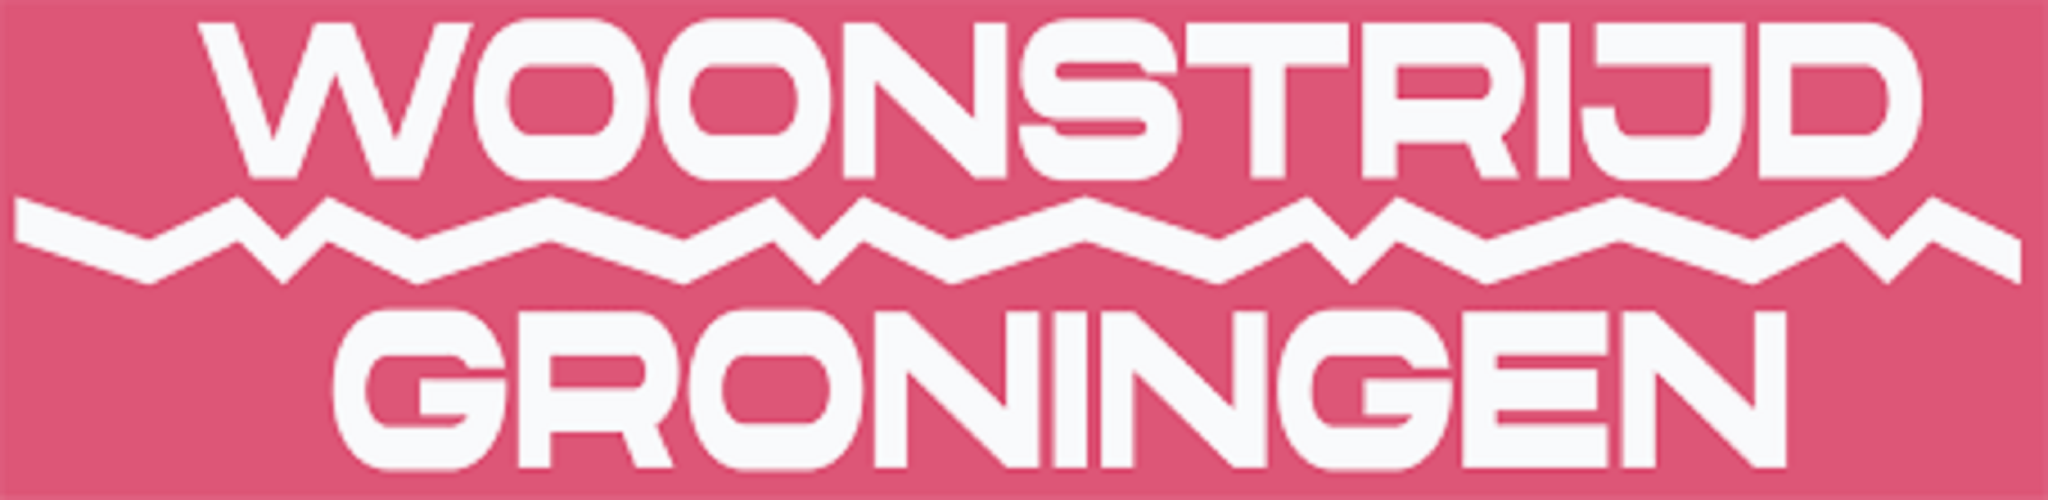 Woonstrijd Groningen logo